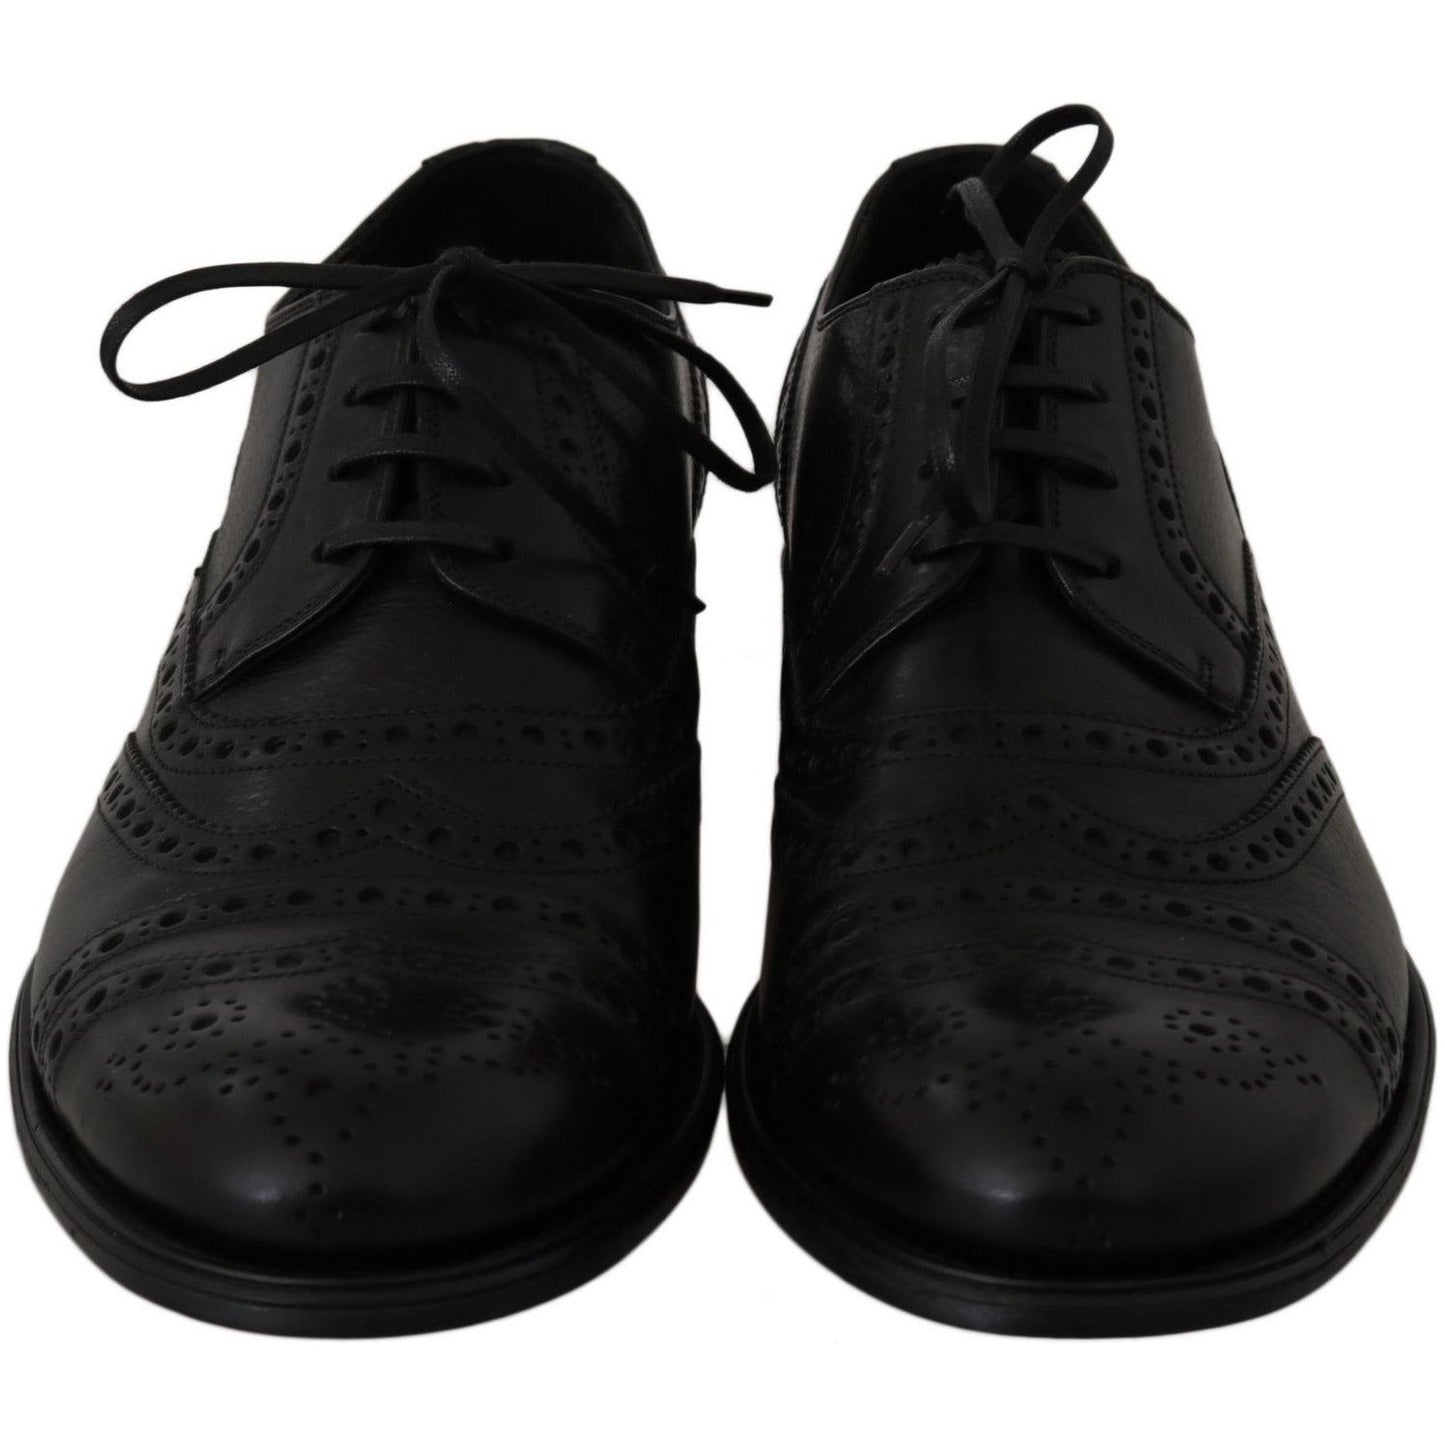 Dress Shoes Elegant Black Leather Derby Wingtip Dress Shoes Dolce & Gabbana